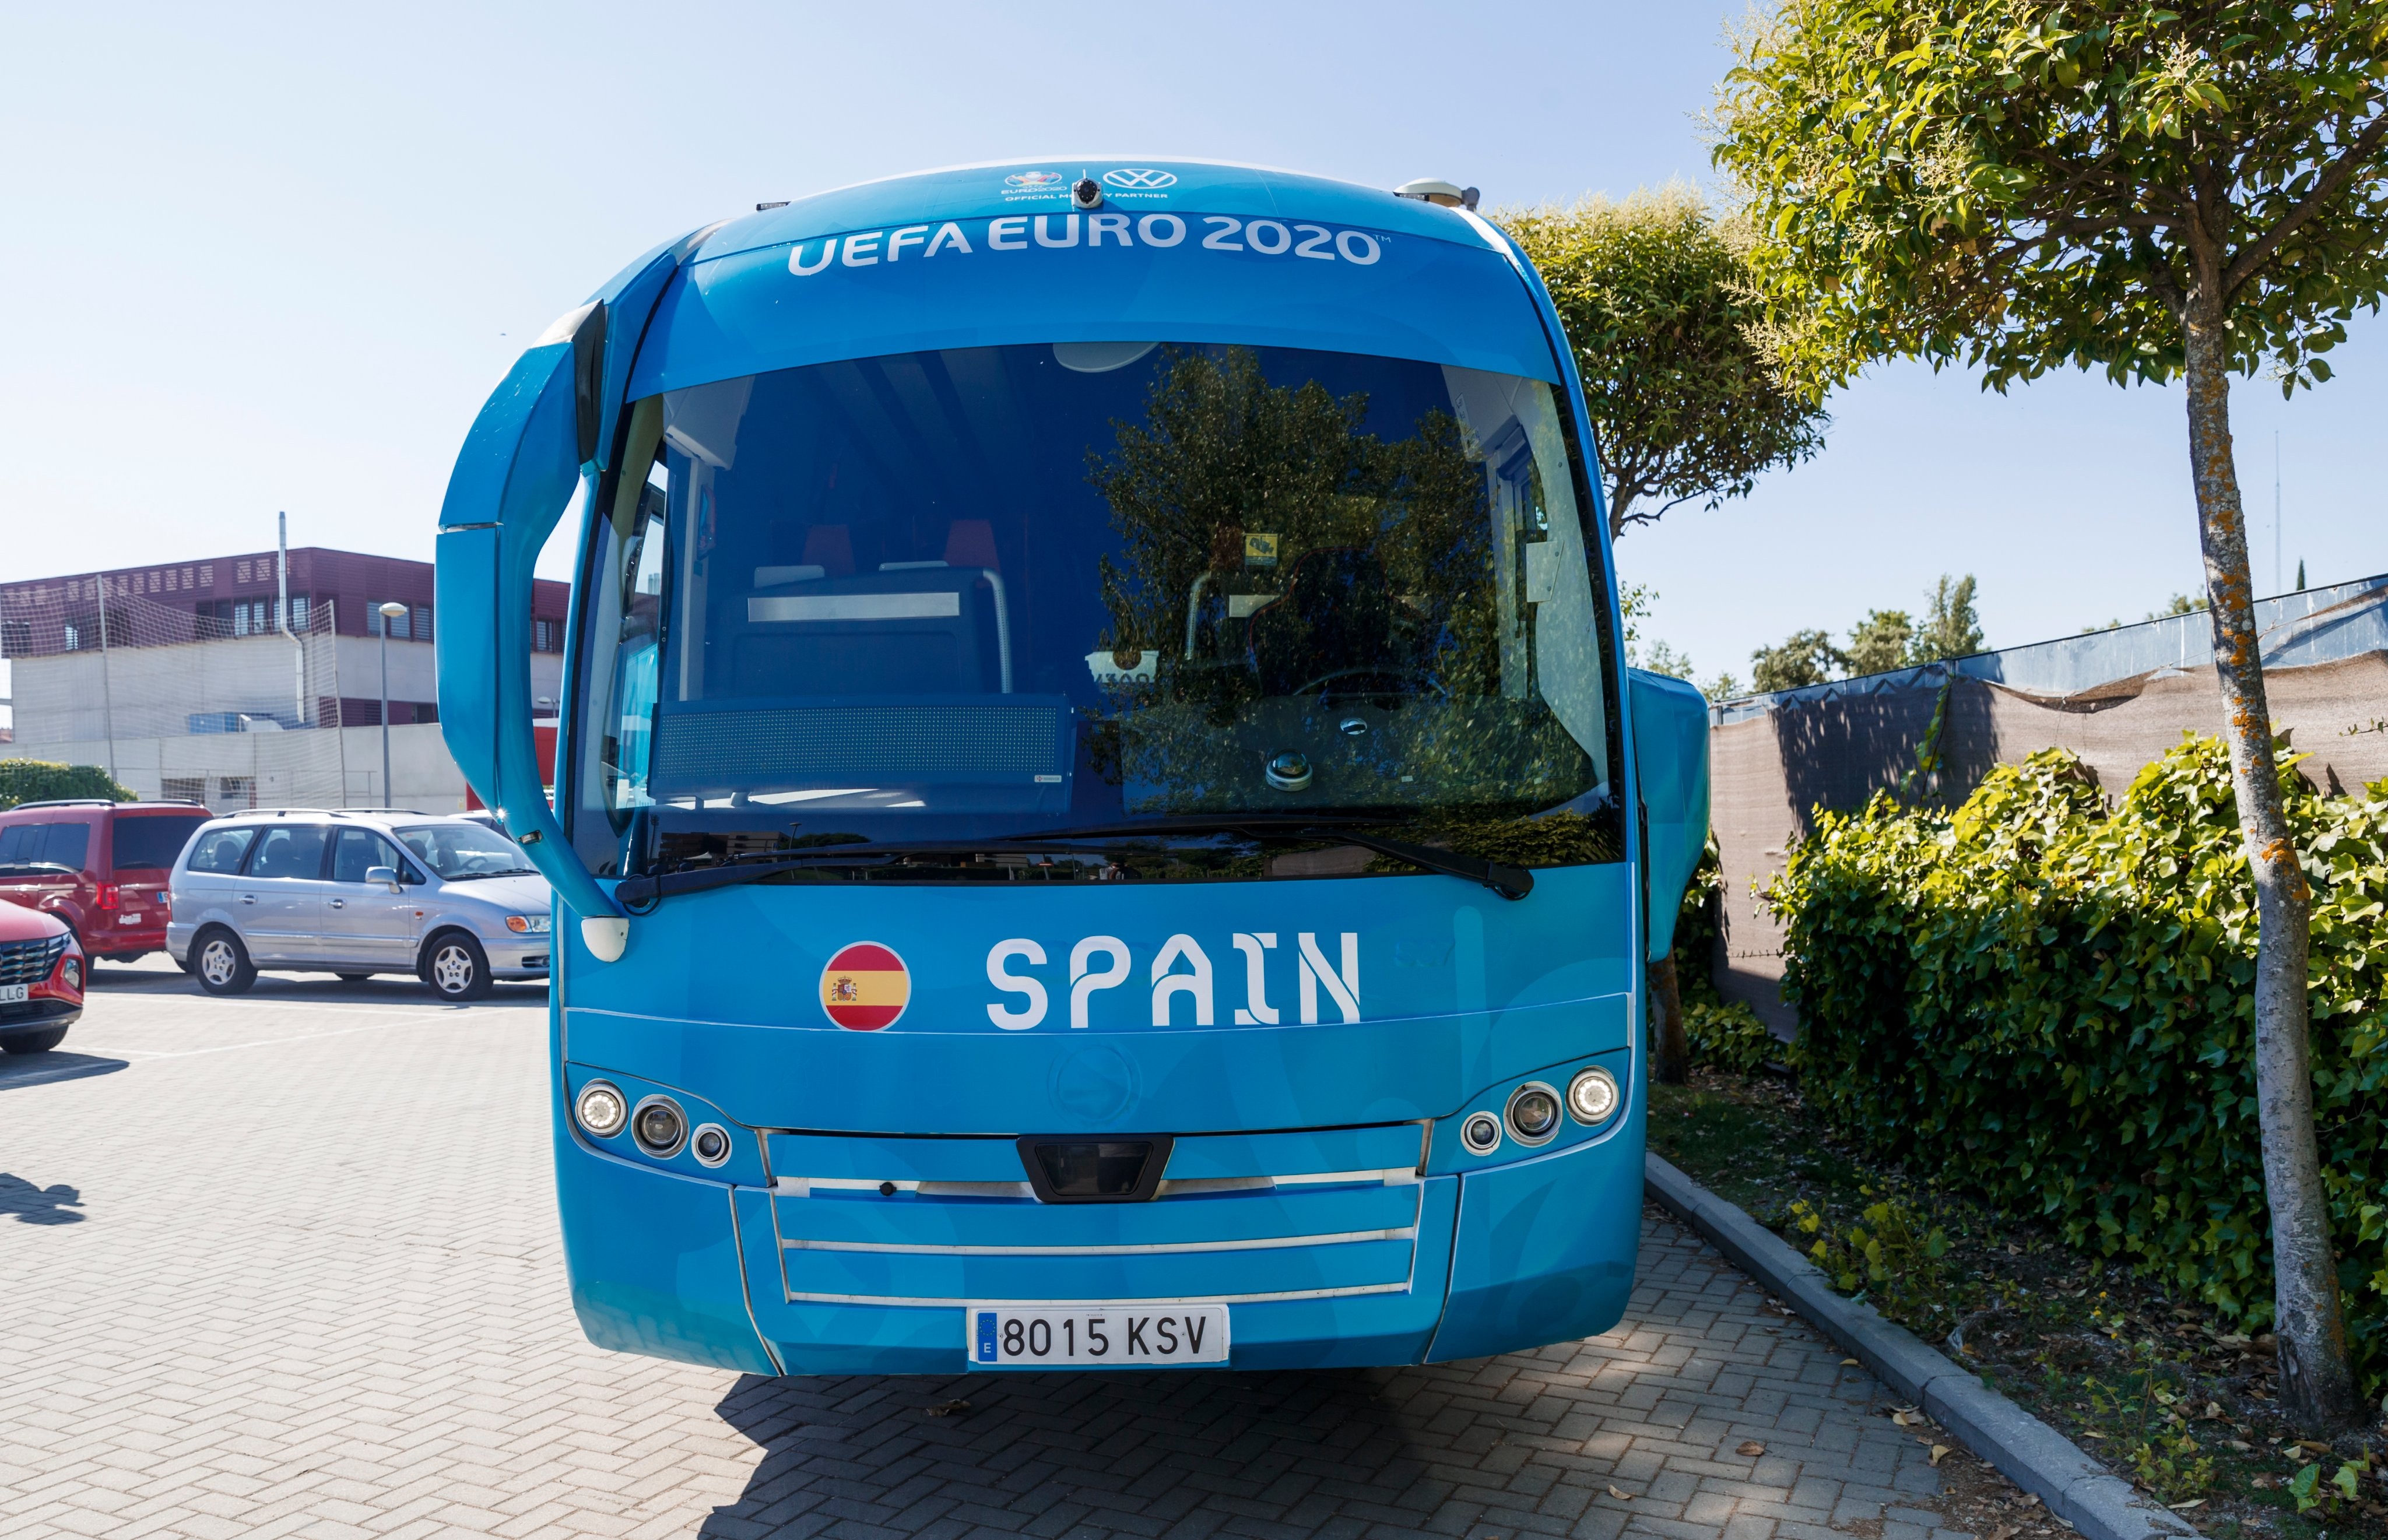 高颜值,西班牙国家队欧洲杯期间大巴车亮相